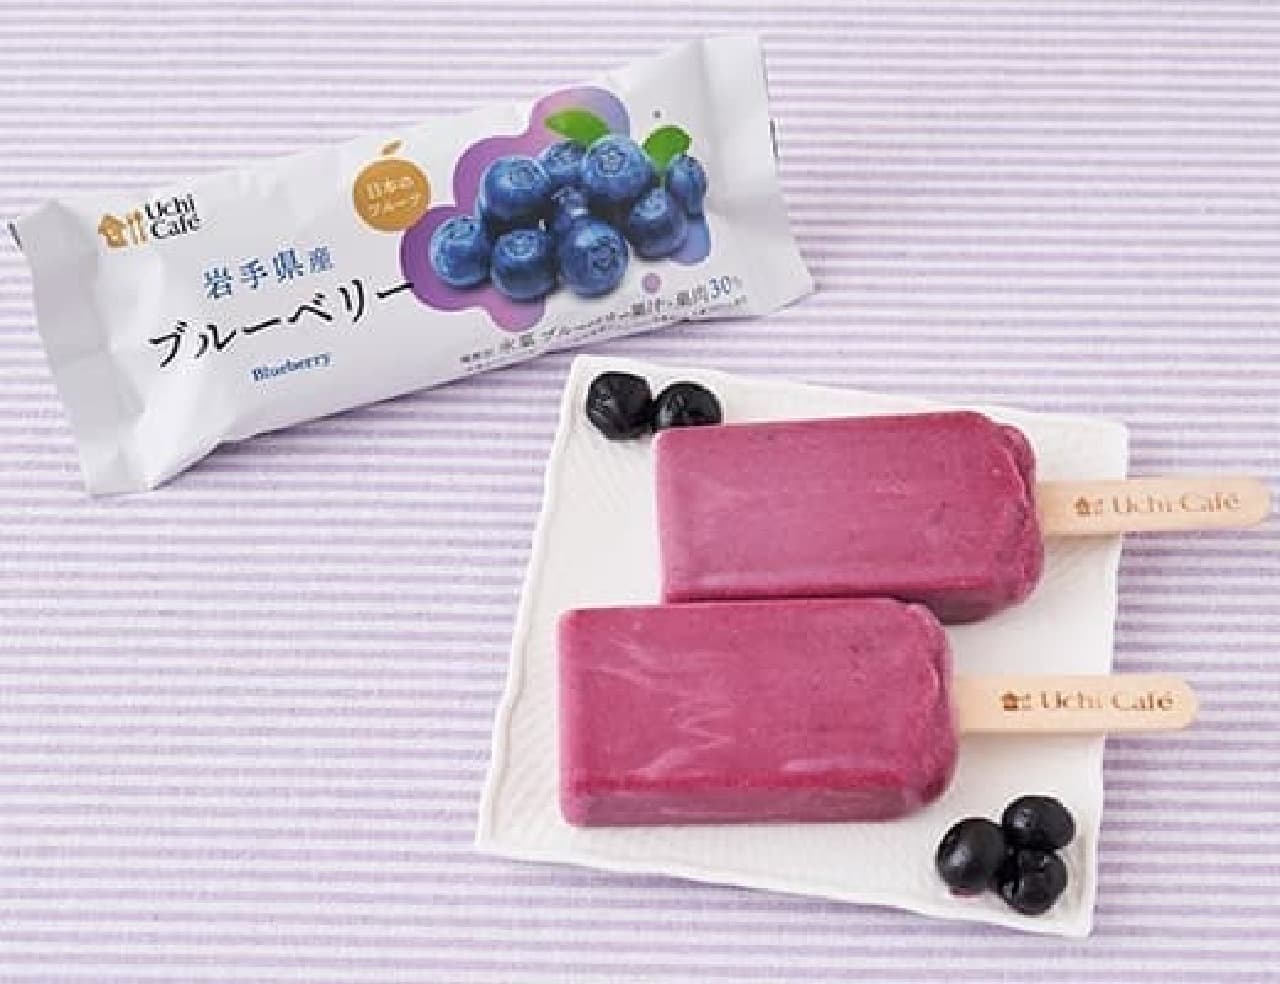 Lawson "Uchi Cafe Japanese Fruit Blueberry 75ml"